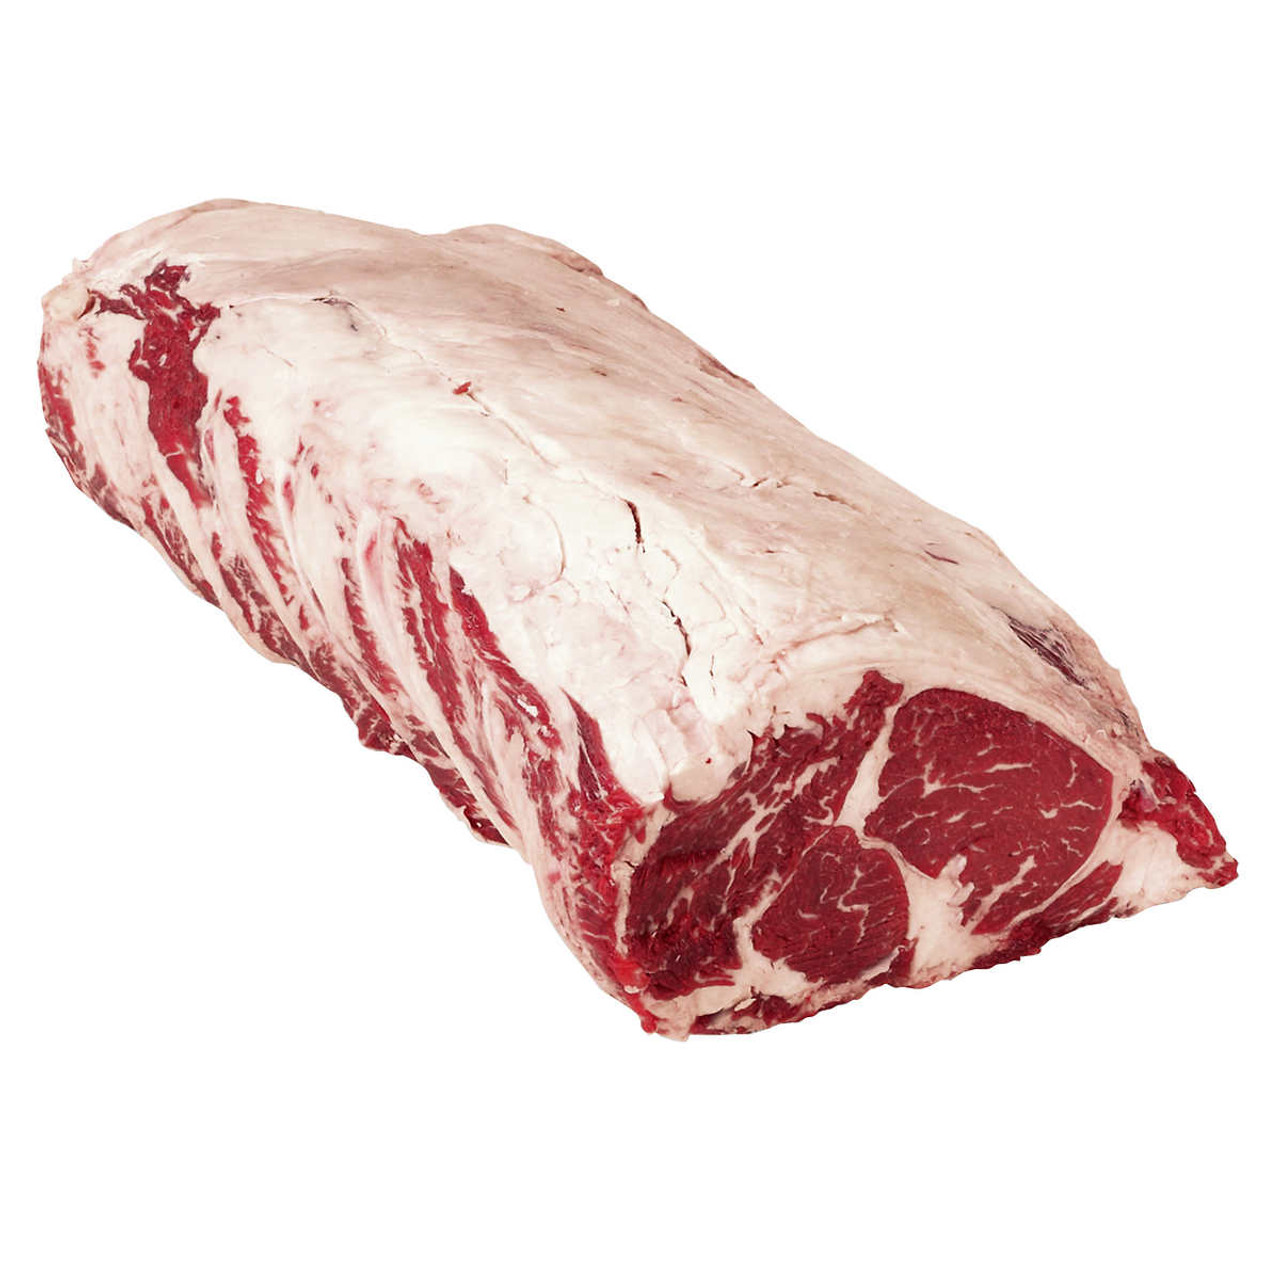 Ungraded Beef Striploin Roast - Beef